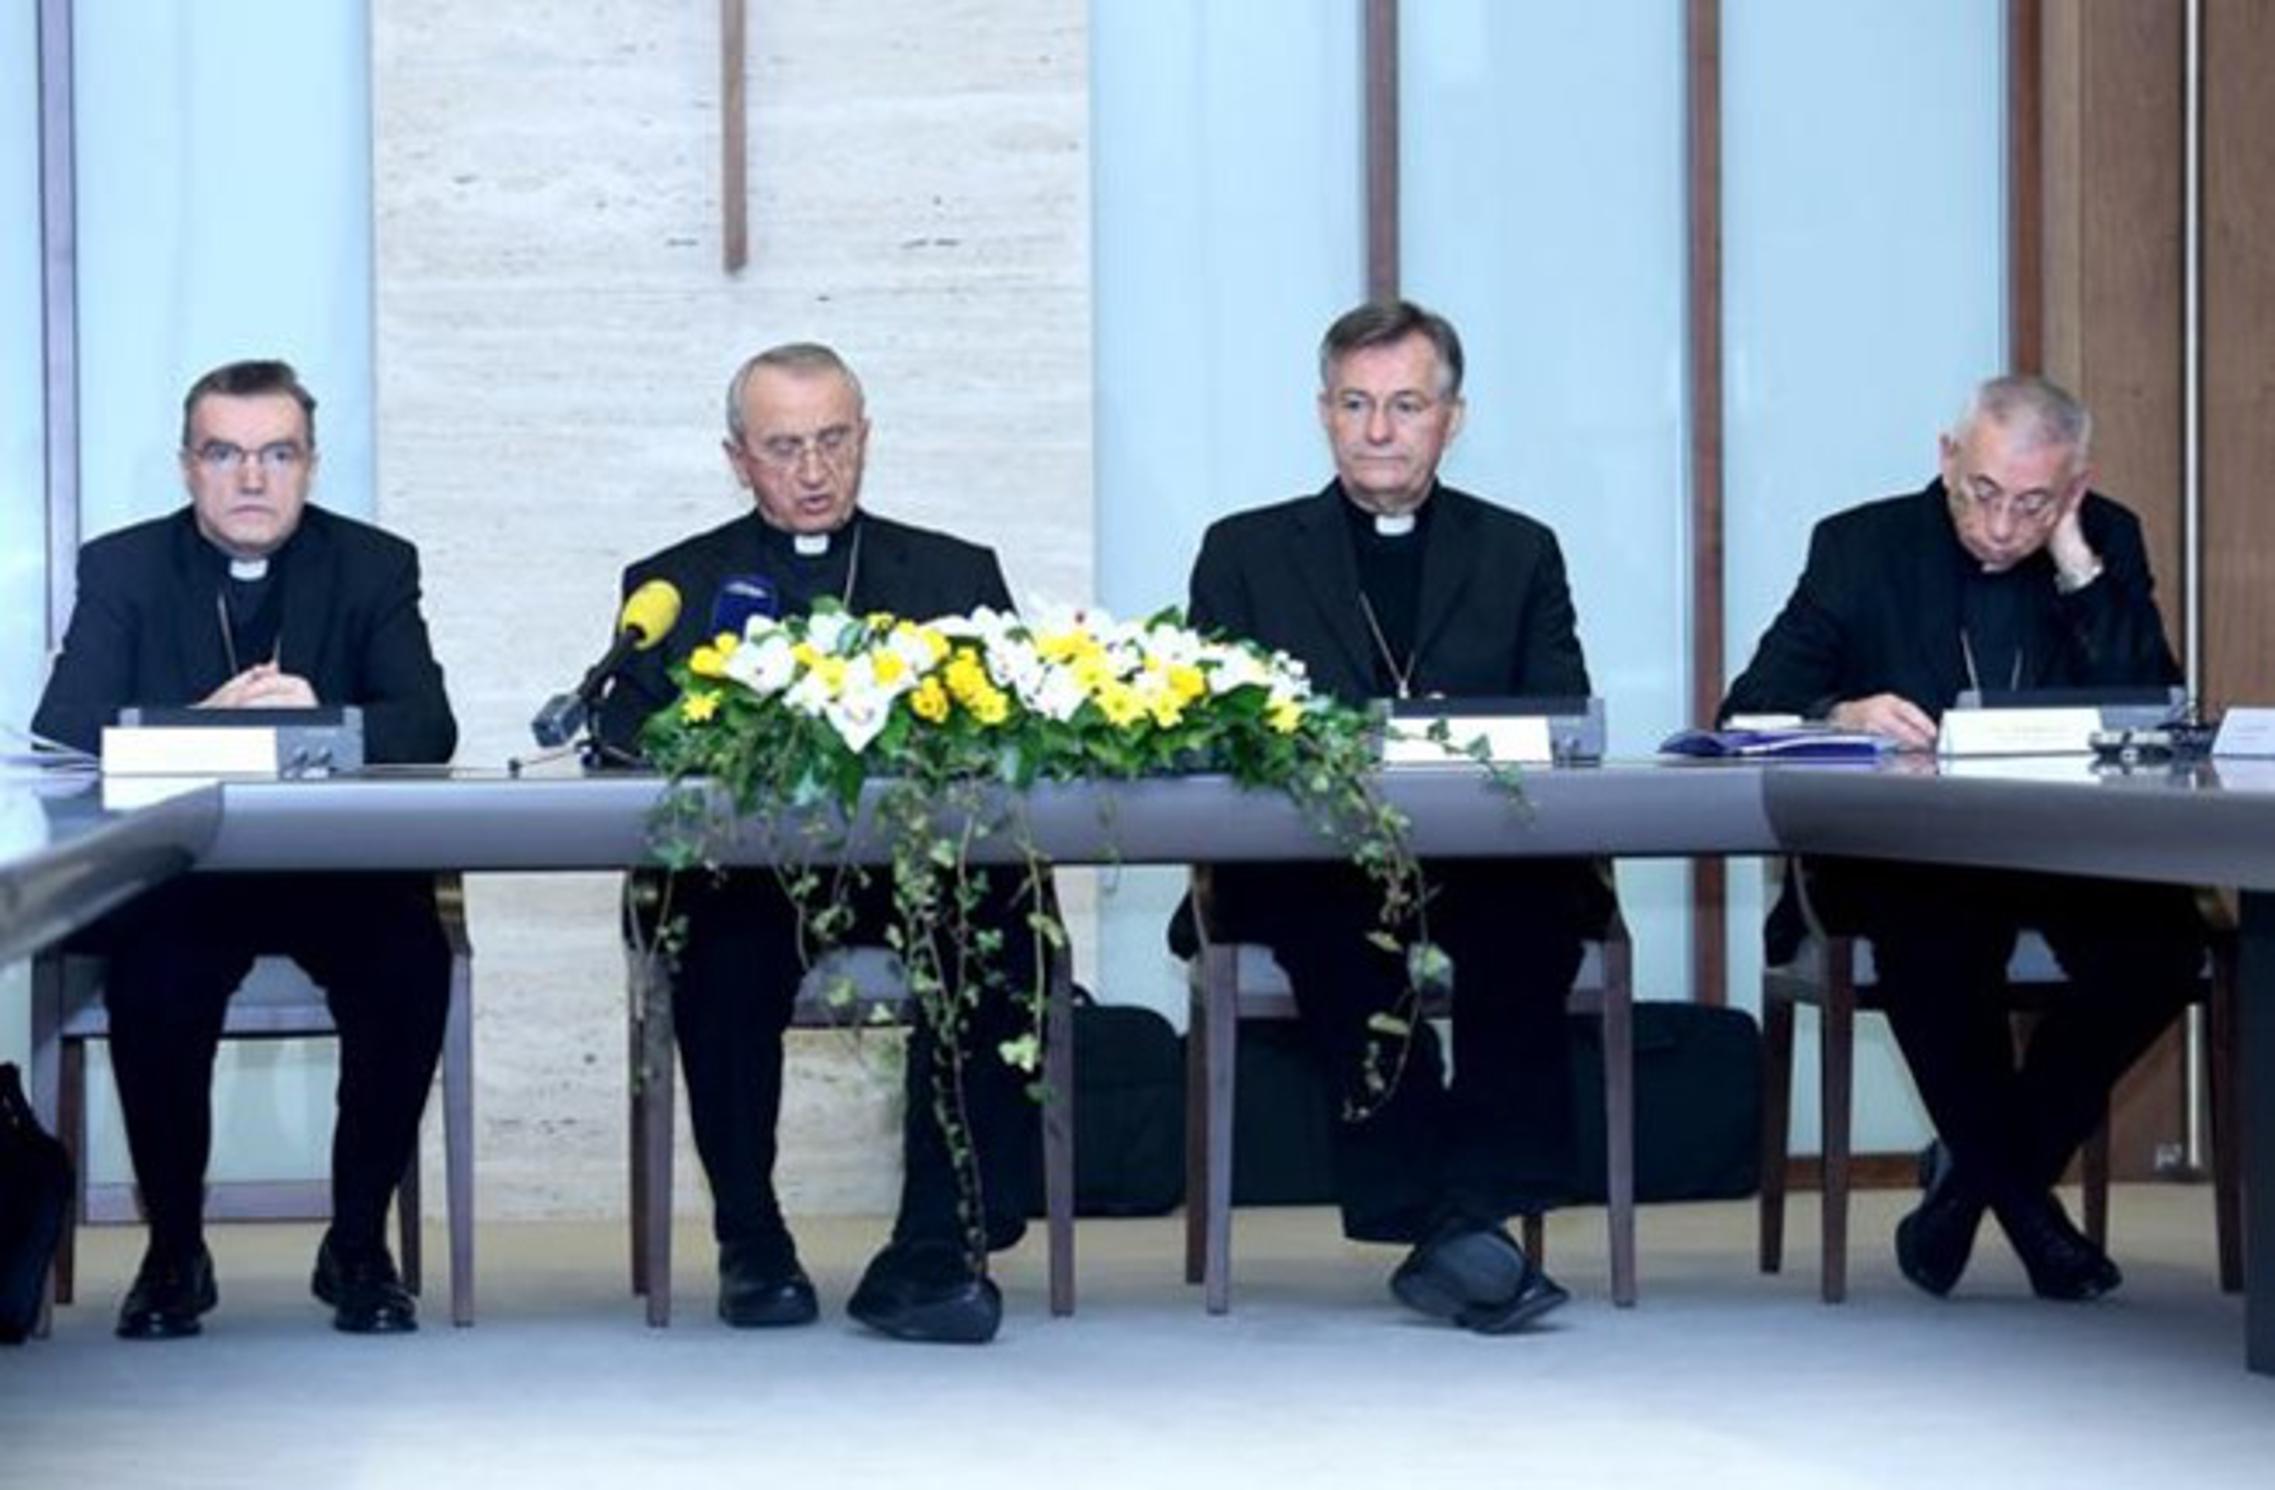 Biskupi su vjernicima poslali poruku uoči izbora